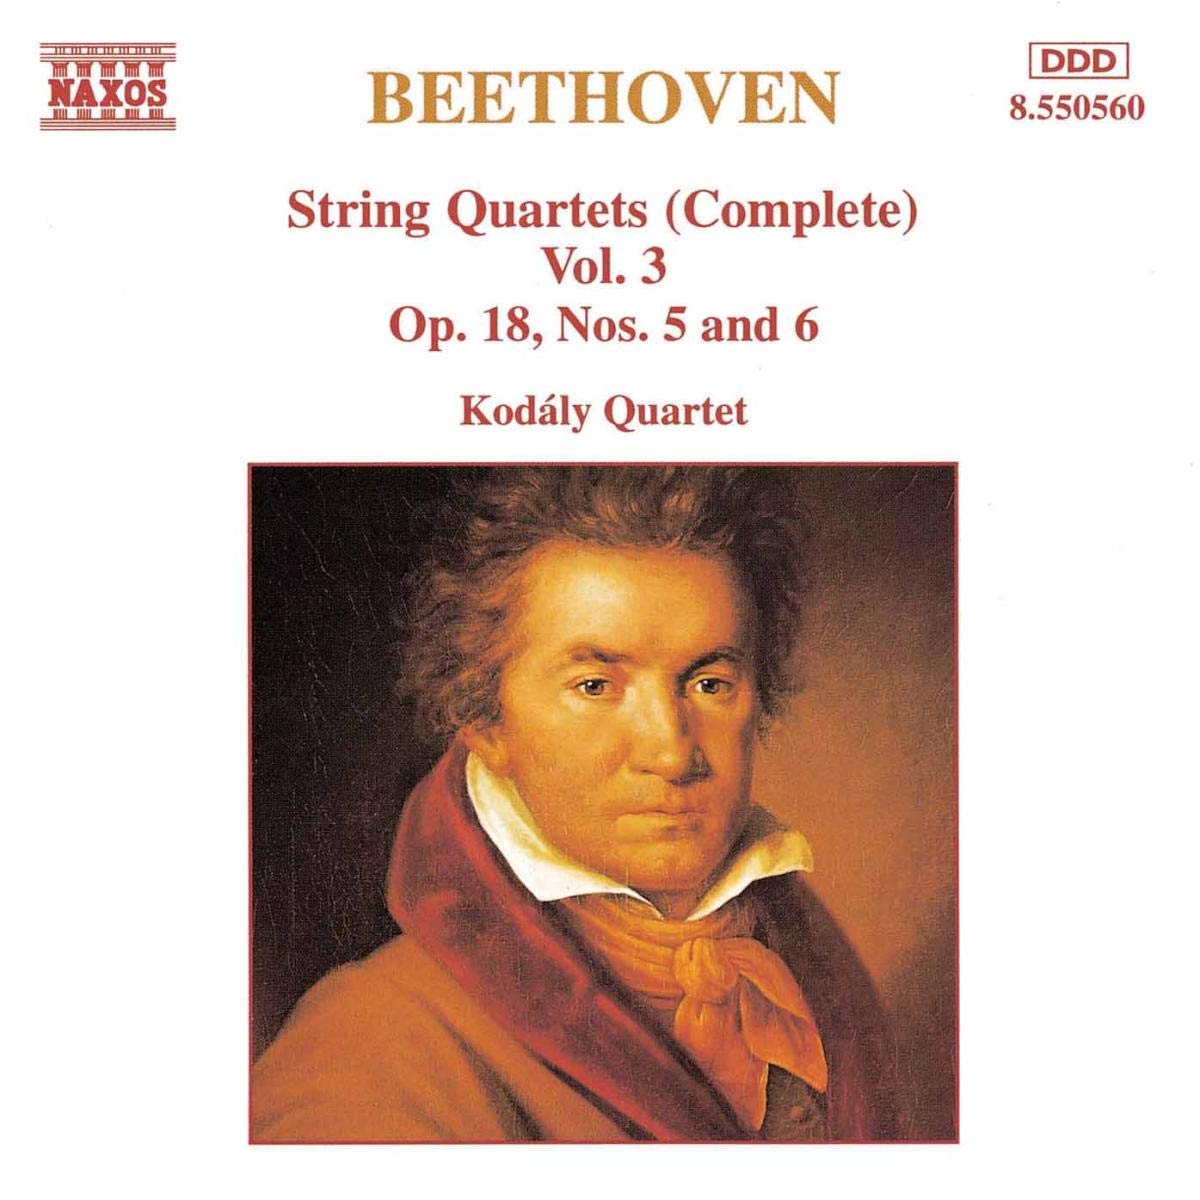 BEETHOVEN: String Quartets vol. 3